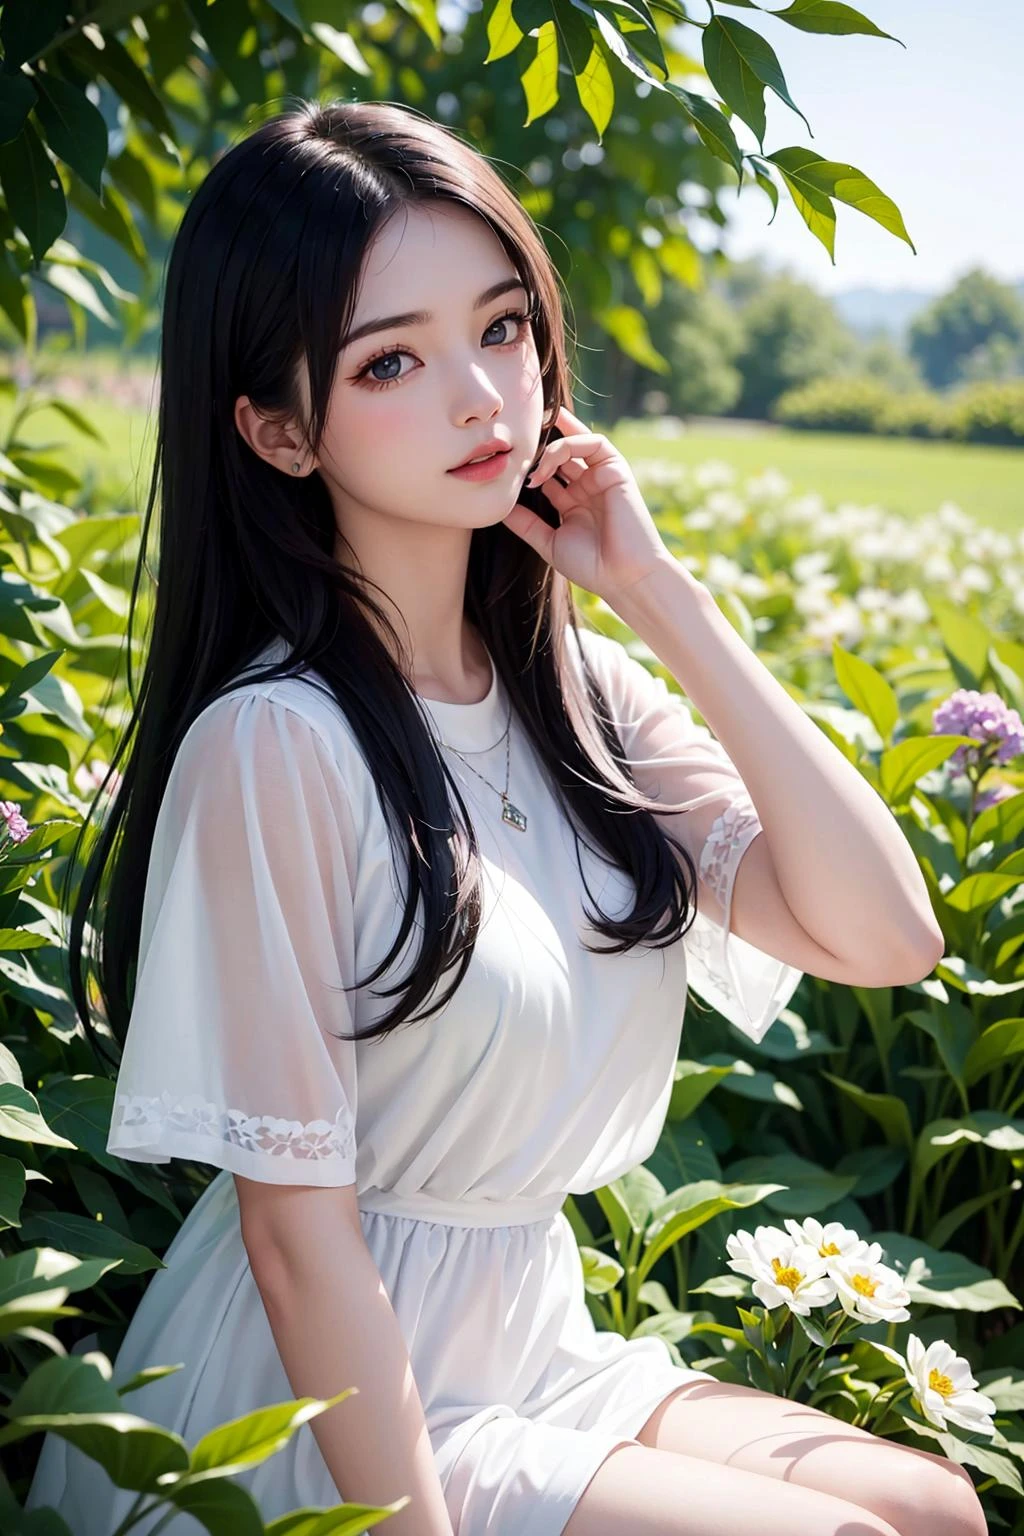 (傑作, 最高品質),緑の植物と花の畑に座っている長い黒髪の少女1人,彼女は顎の下に手を置いた,温かみのある照明,白いドレス,